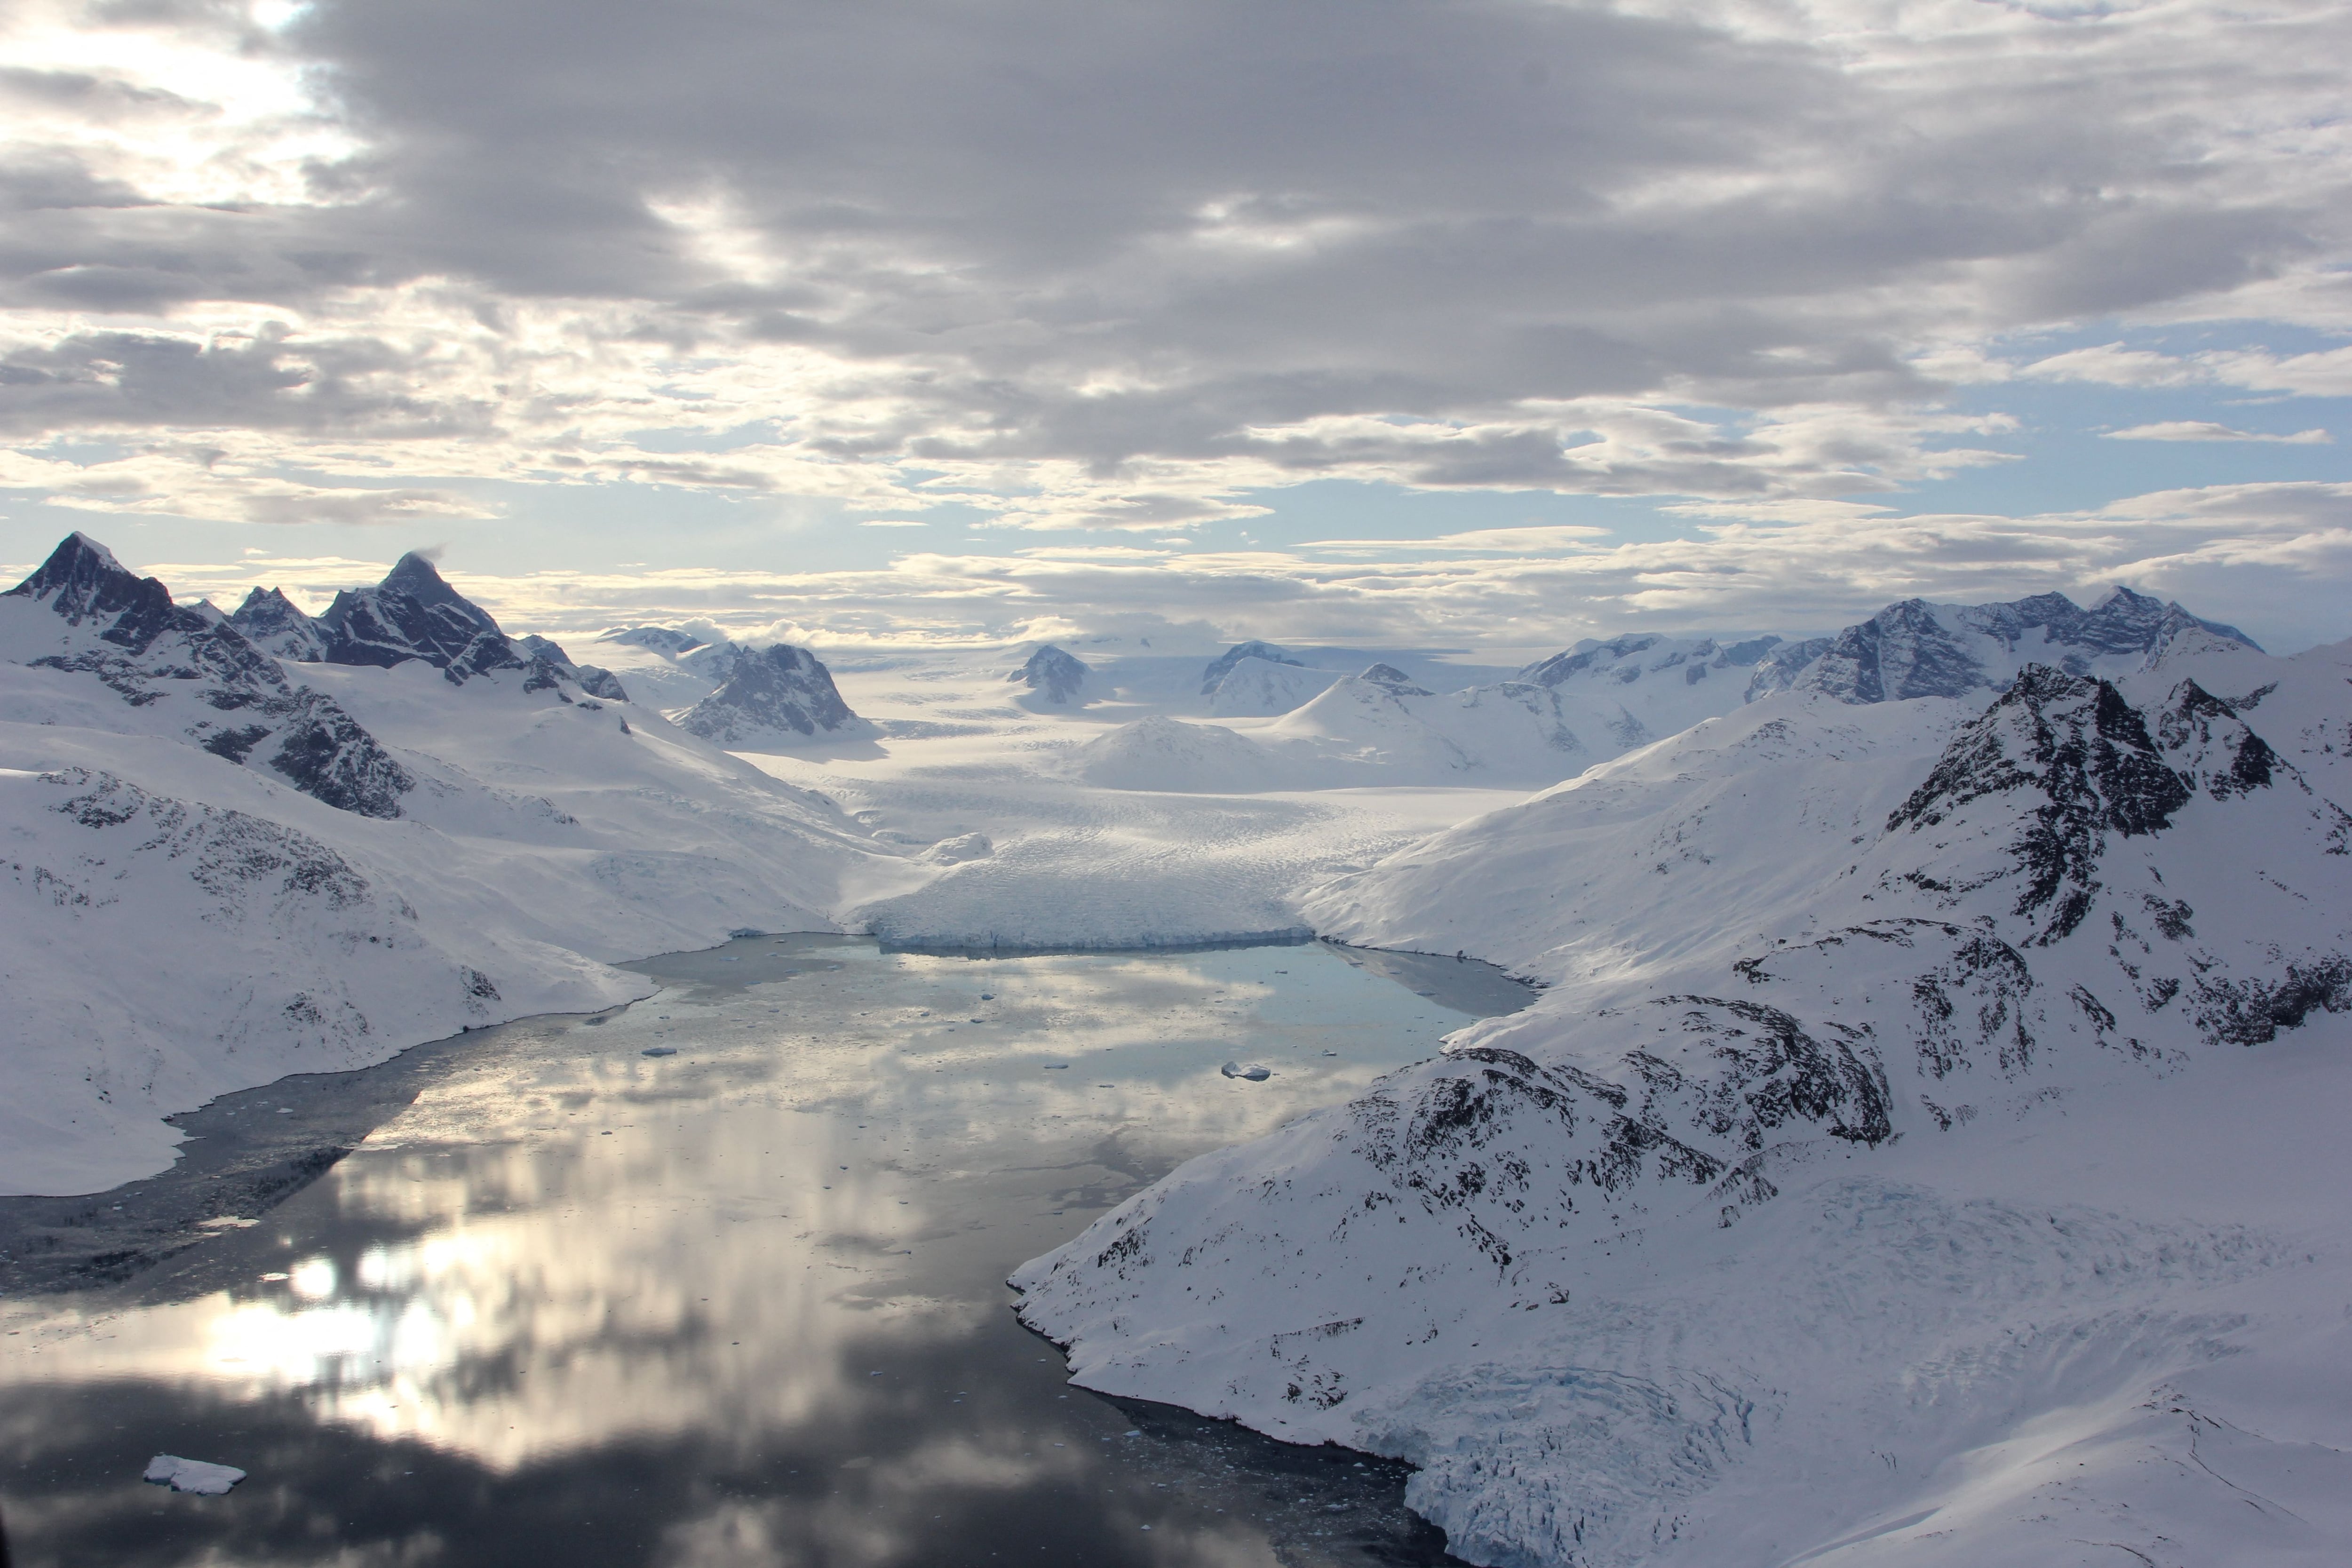 Un fiordo en el sureste de Groenlandia, mostrado con un glaciar de terminación marina en la distancia (Kristin Laidre/University of Washington/REUTERS)